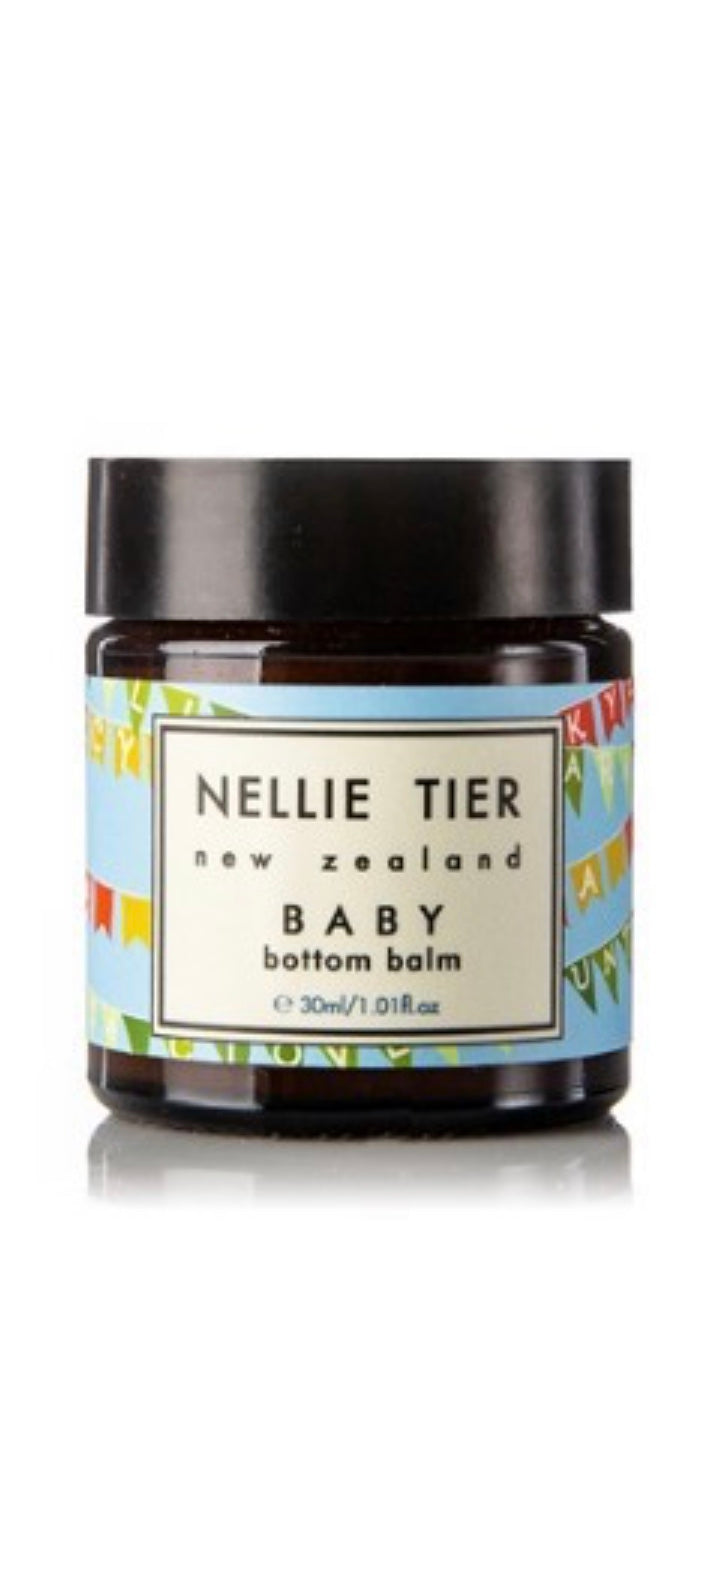 Nellie Tier - Baby Bottom Balm 60g